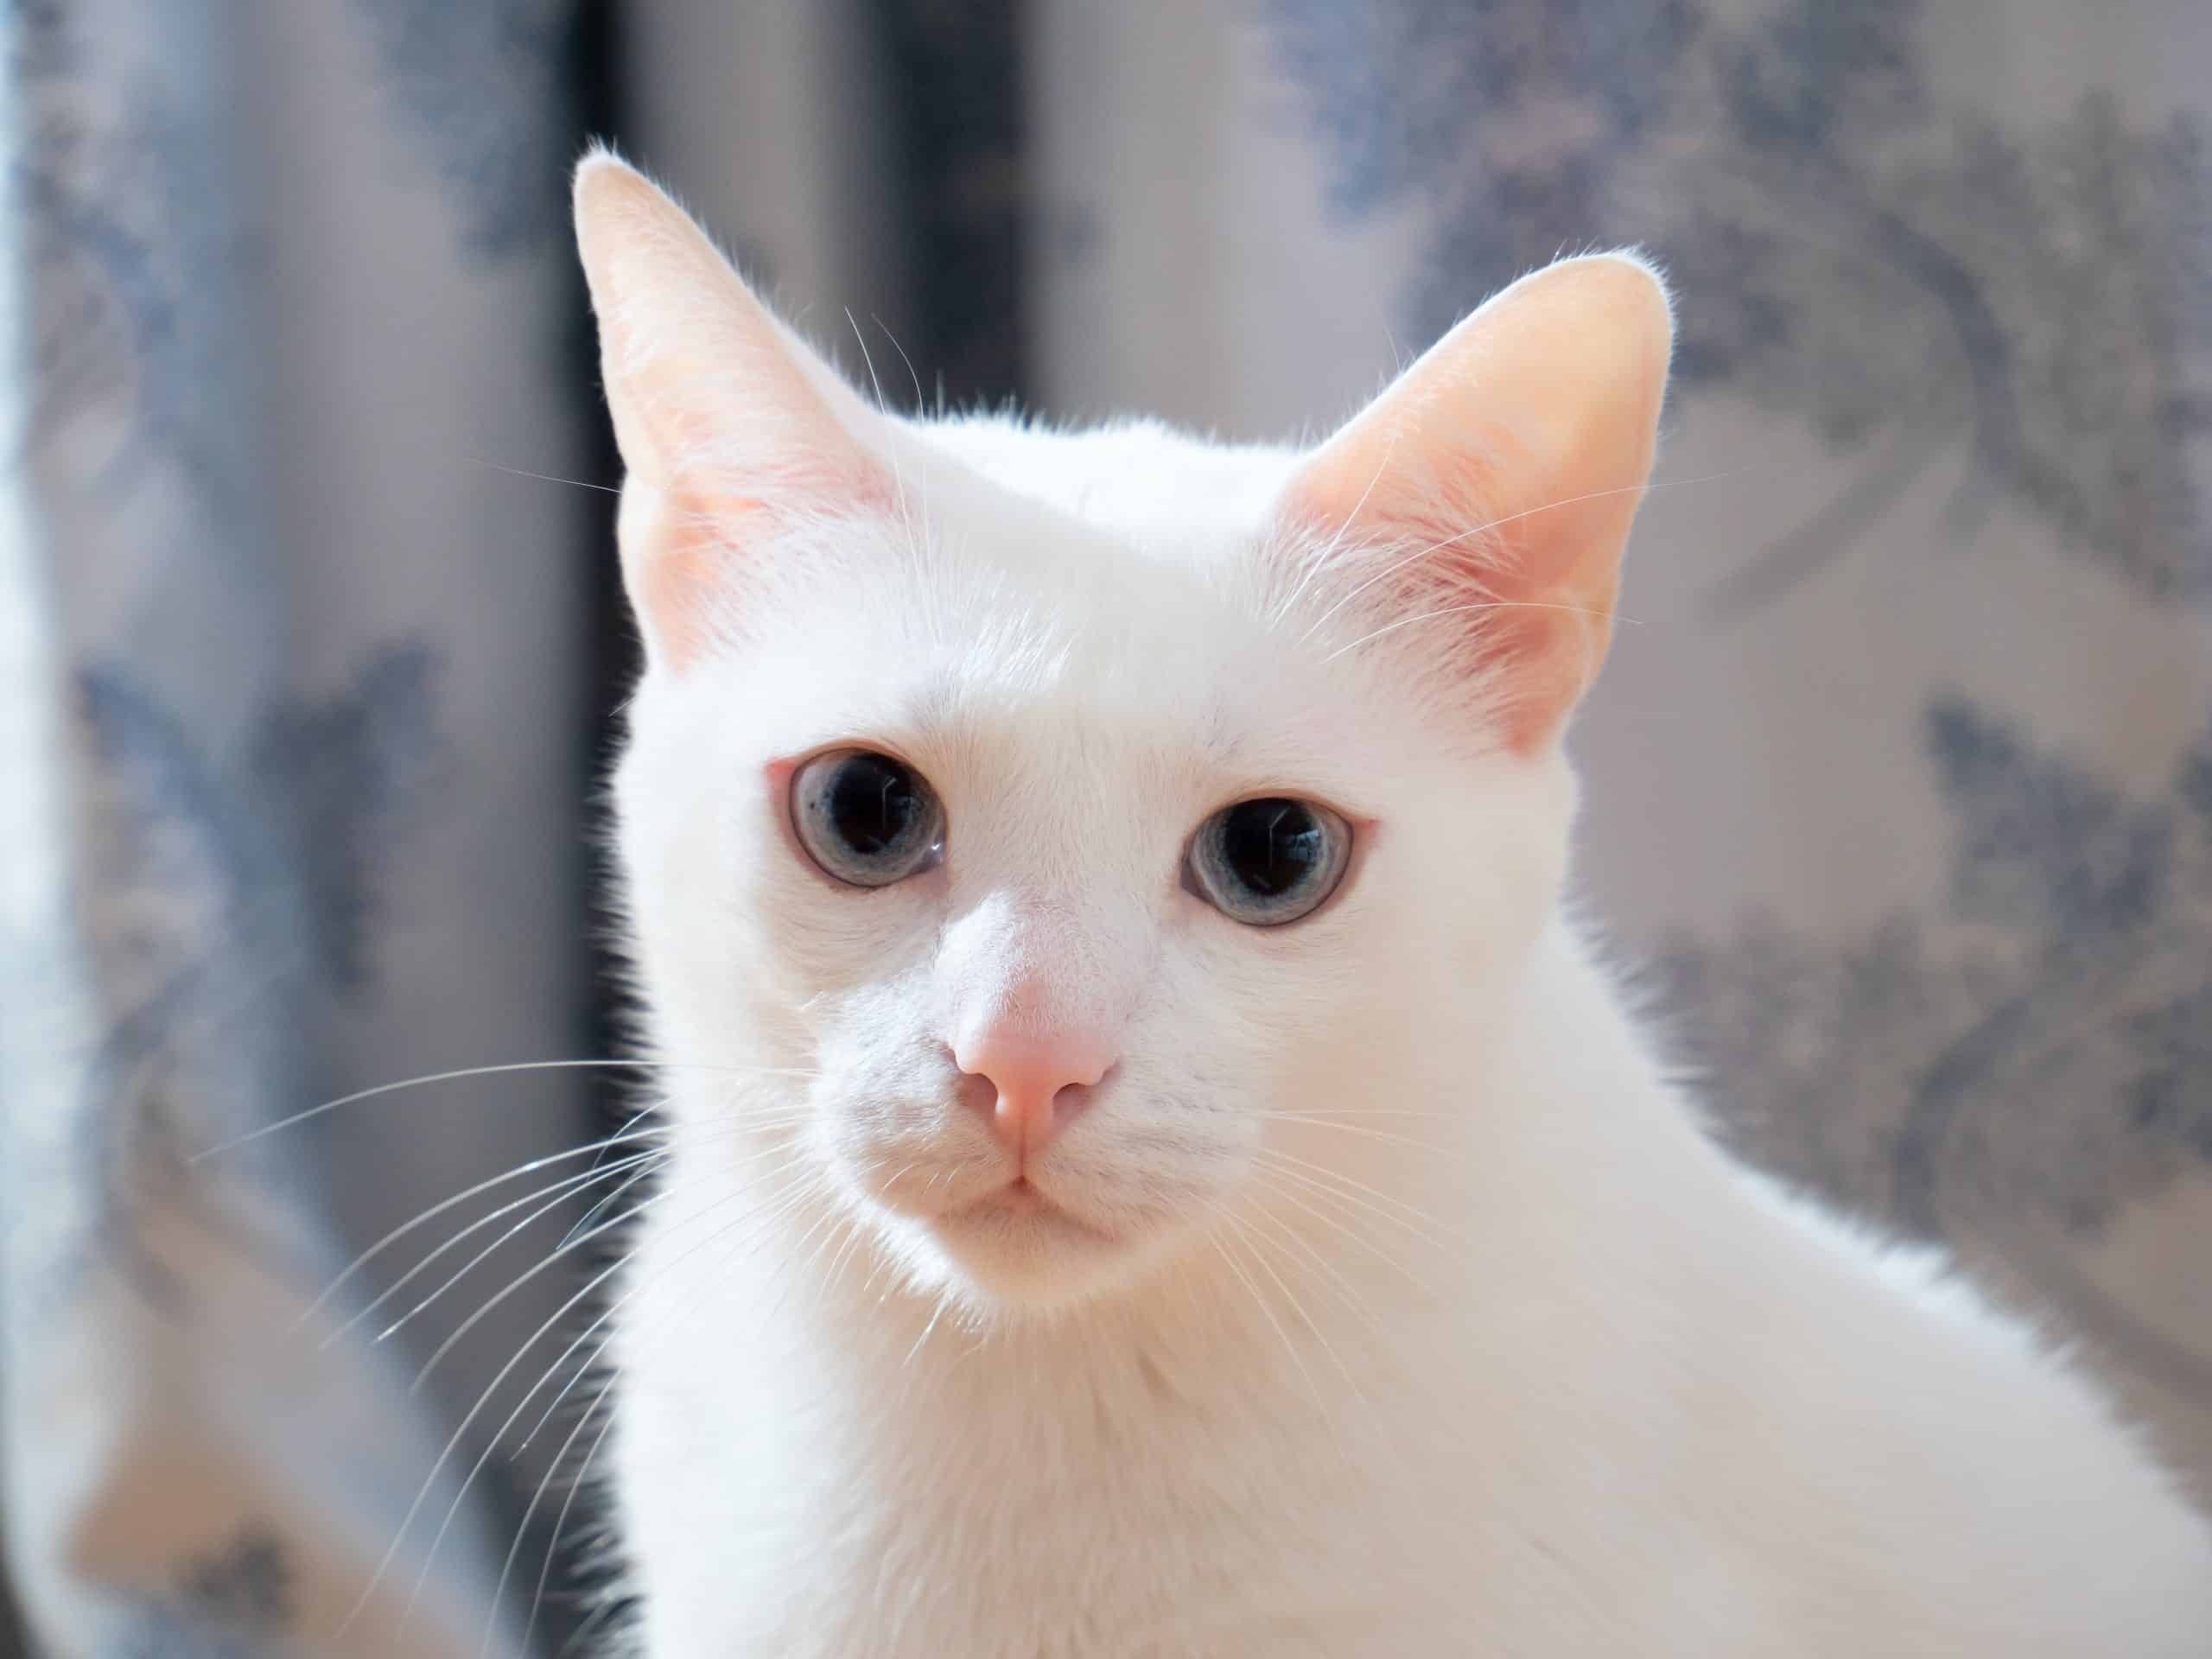  سلالات القطط البيضاء: تعرف على خصائصها وتقع في الحب